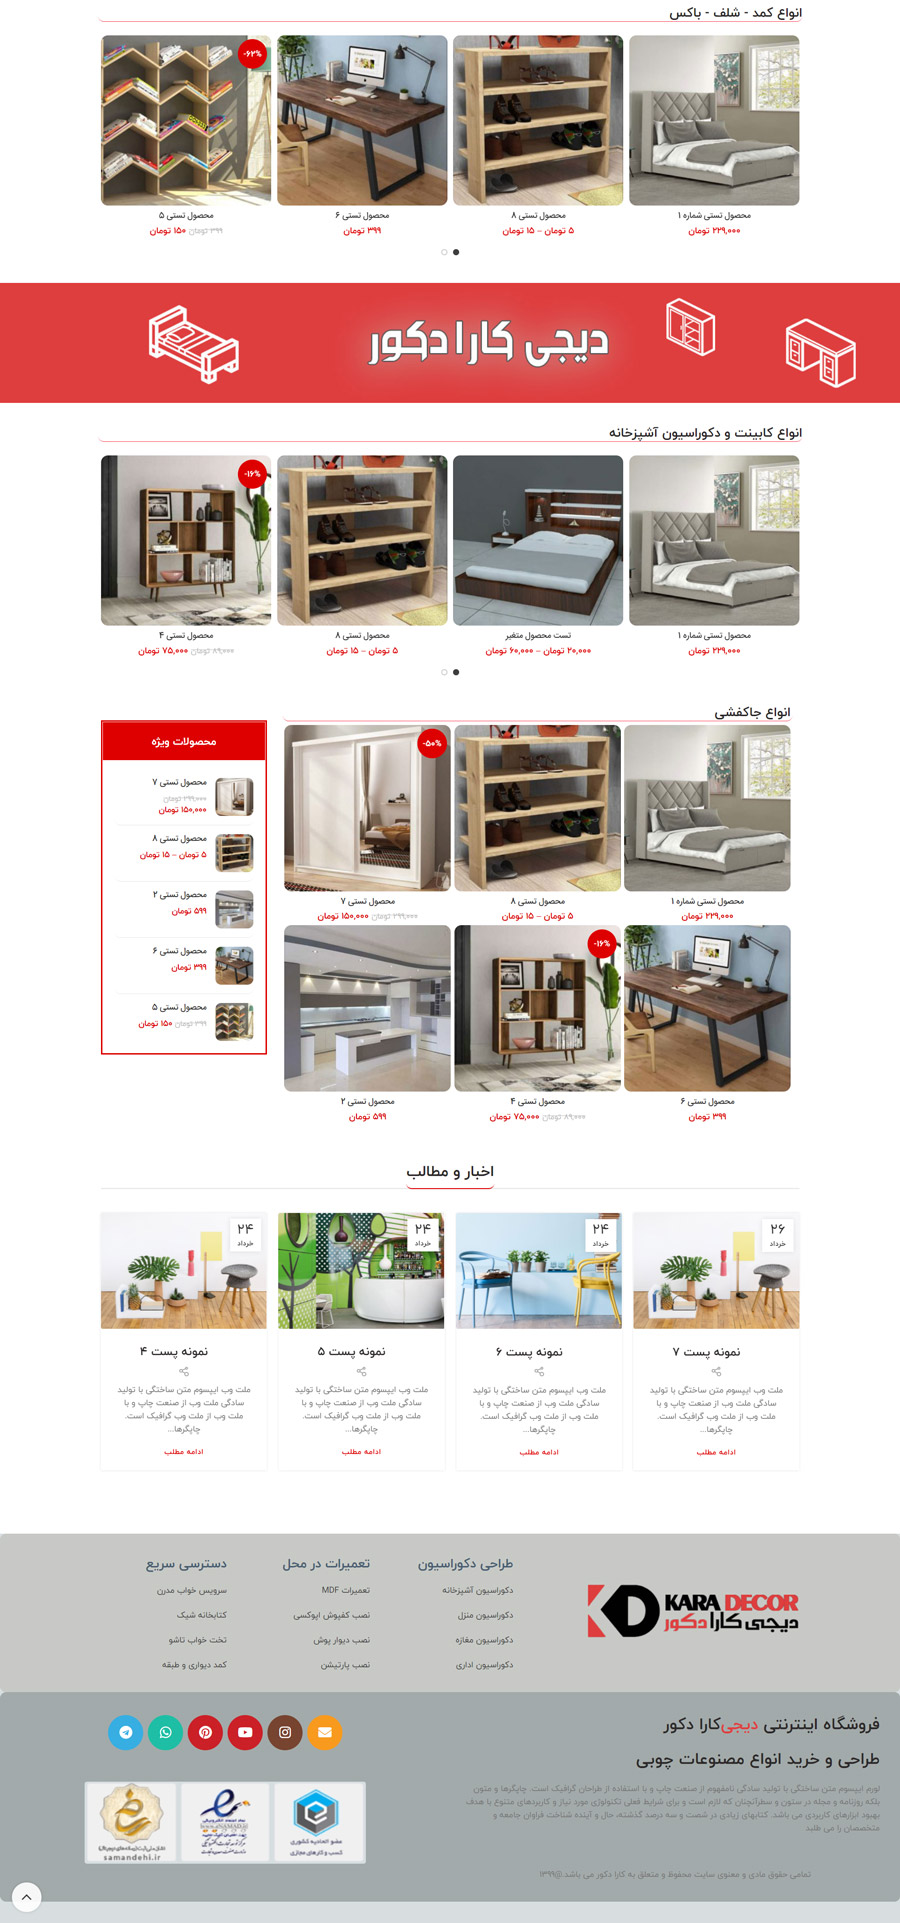 طراحی سایت فروشگاهی دکوراسیون داخلی دیجی کارا دکور